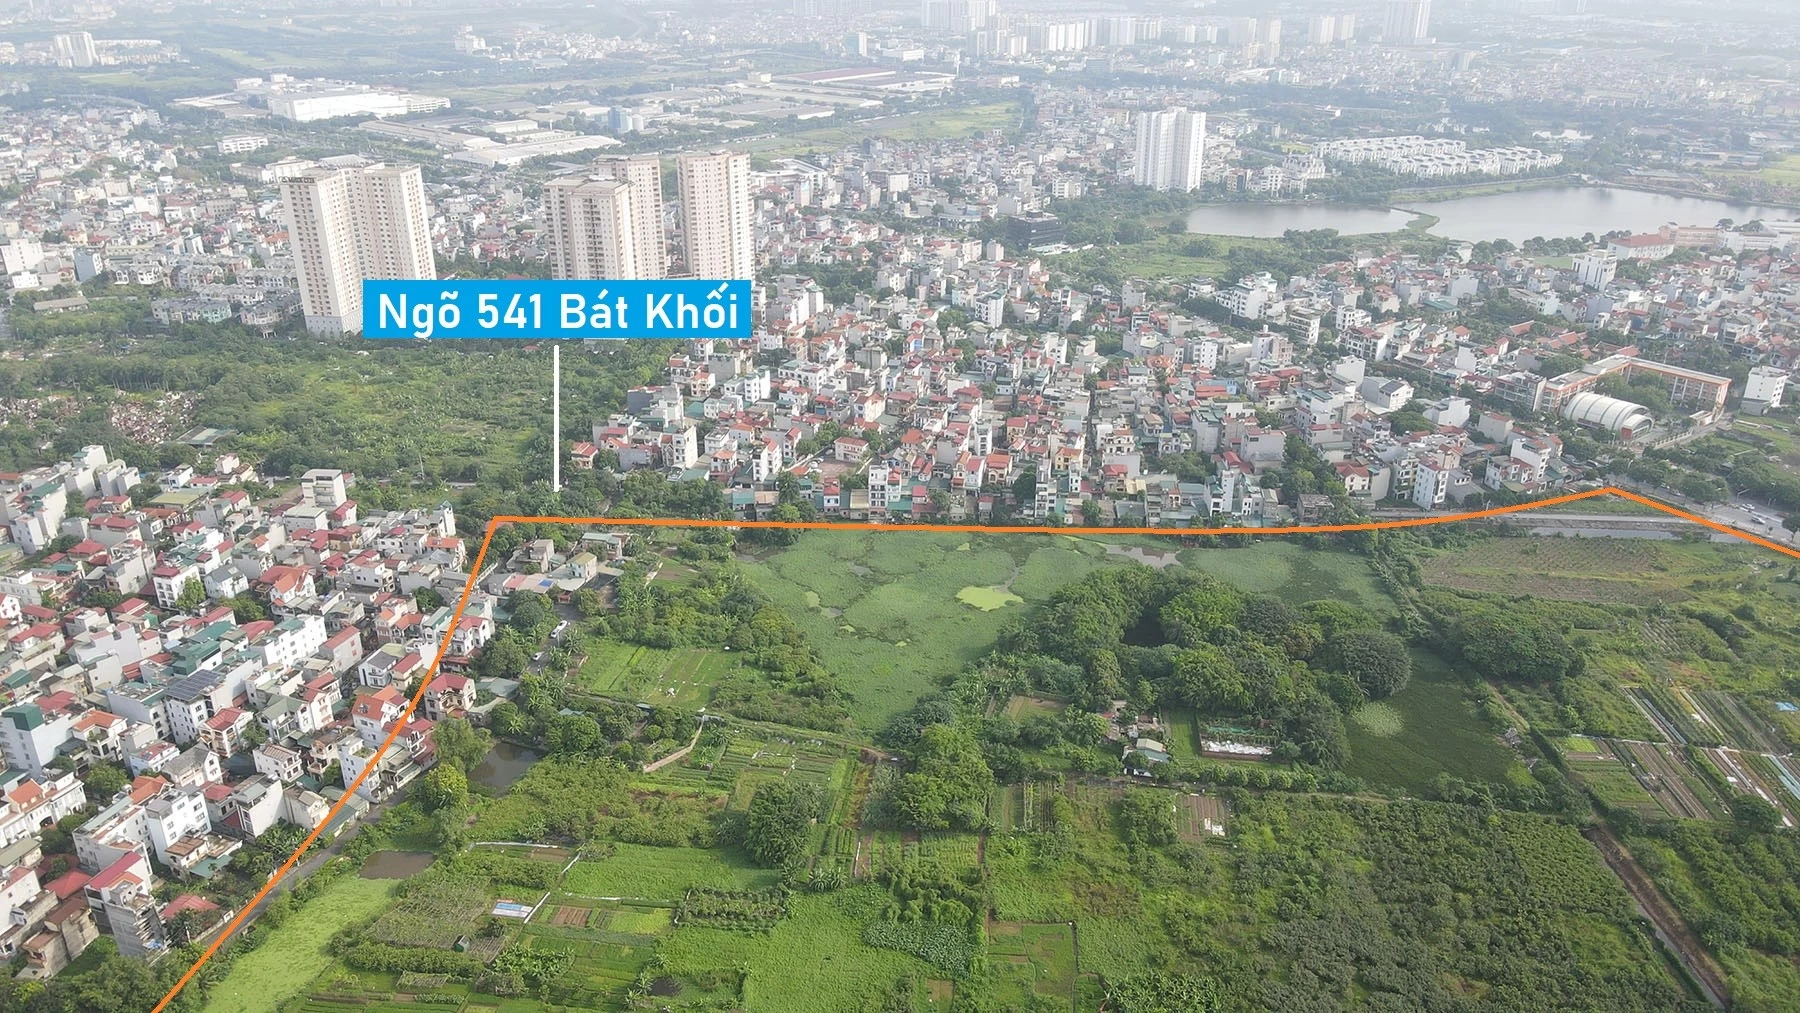 Toàn cảnh khu đất sẽ xây hồ điều hòa Cự Khối hơn 30 ha ở quận Long Biên